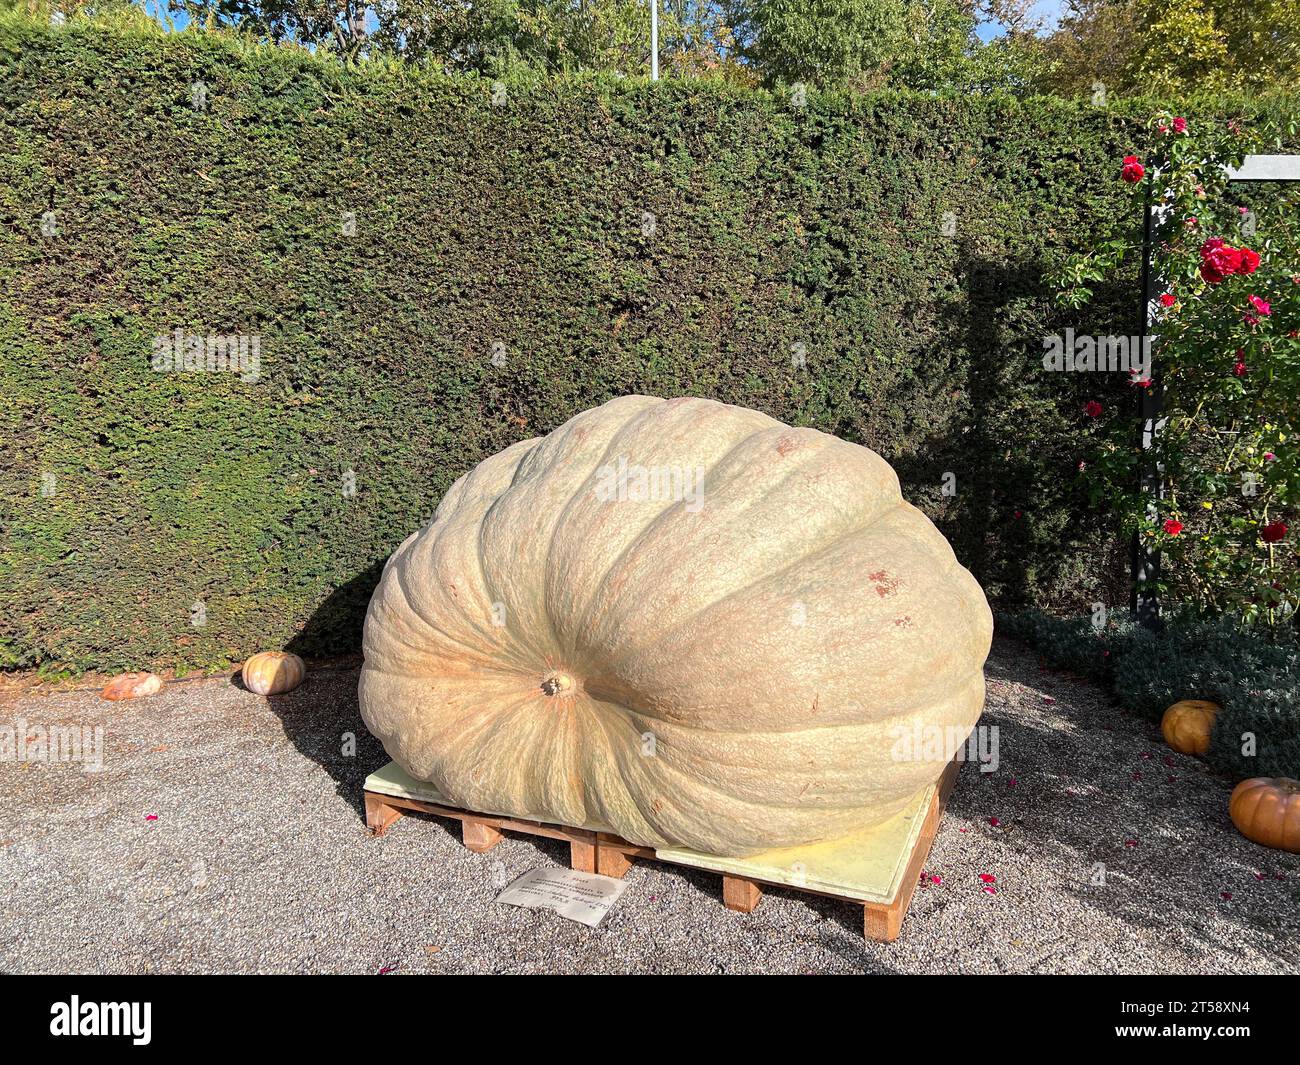 Enorme zucca del peso di 973 kg al festival della zucca in Germania Foto Stock